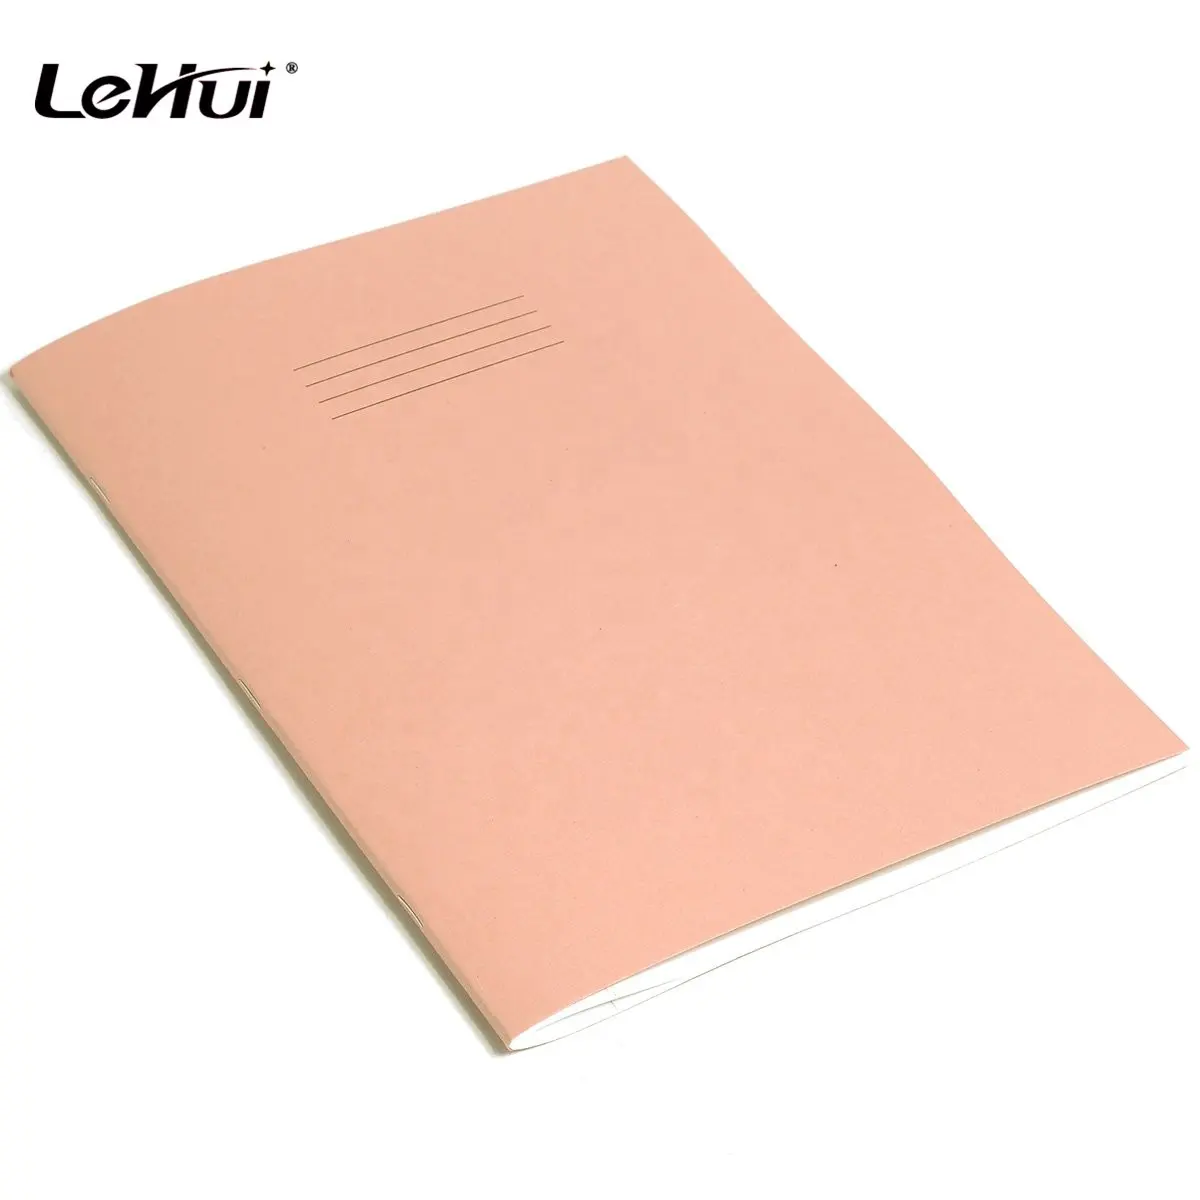 Lehui Fabriek Goedkope Basisschool Notitieboekjes Papier Roze A4 Formaat 80 Pagina 'S Gelinieerd Oefenboek Voor Schoolkinderen